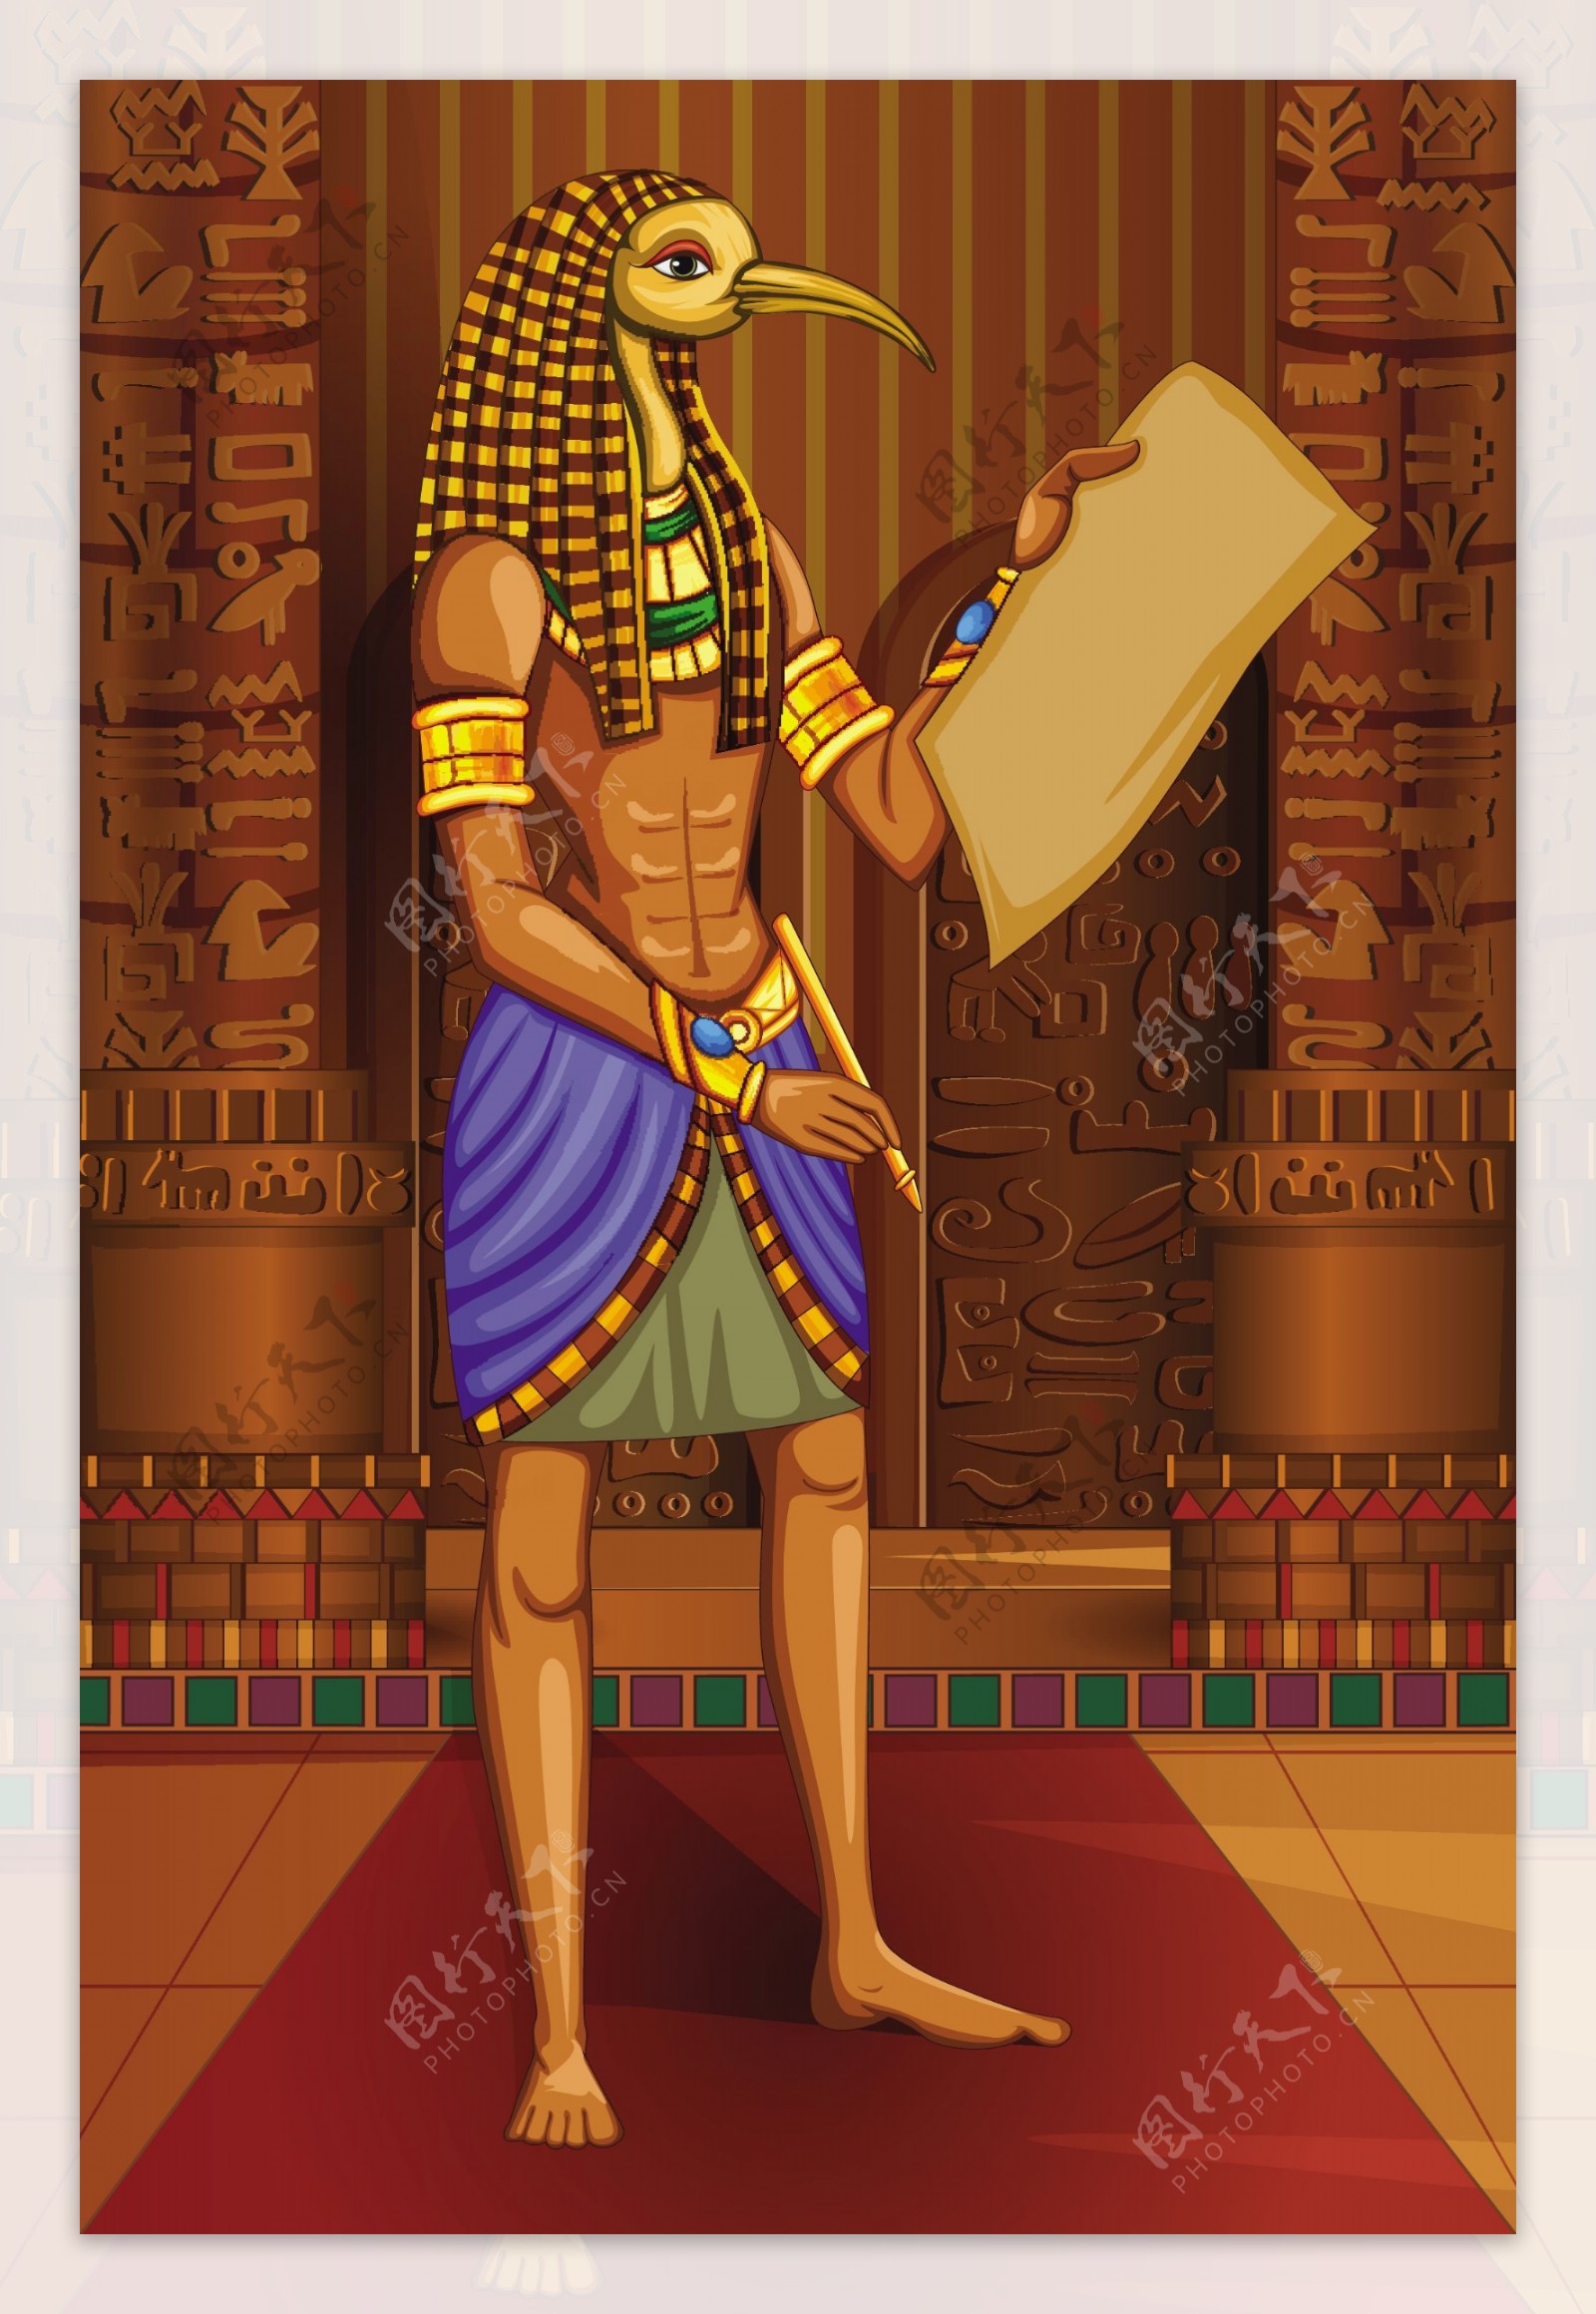 埃及人物插画